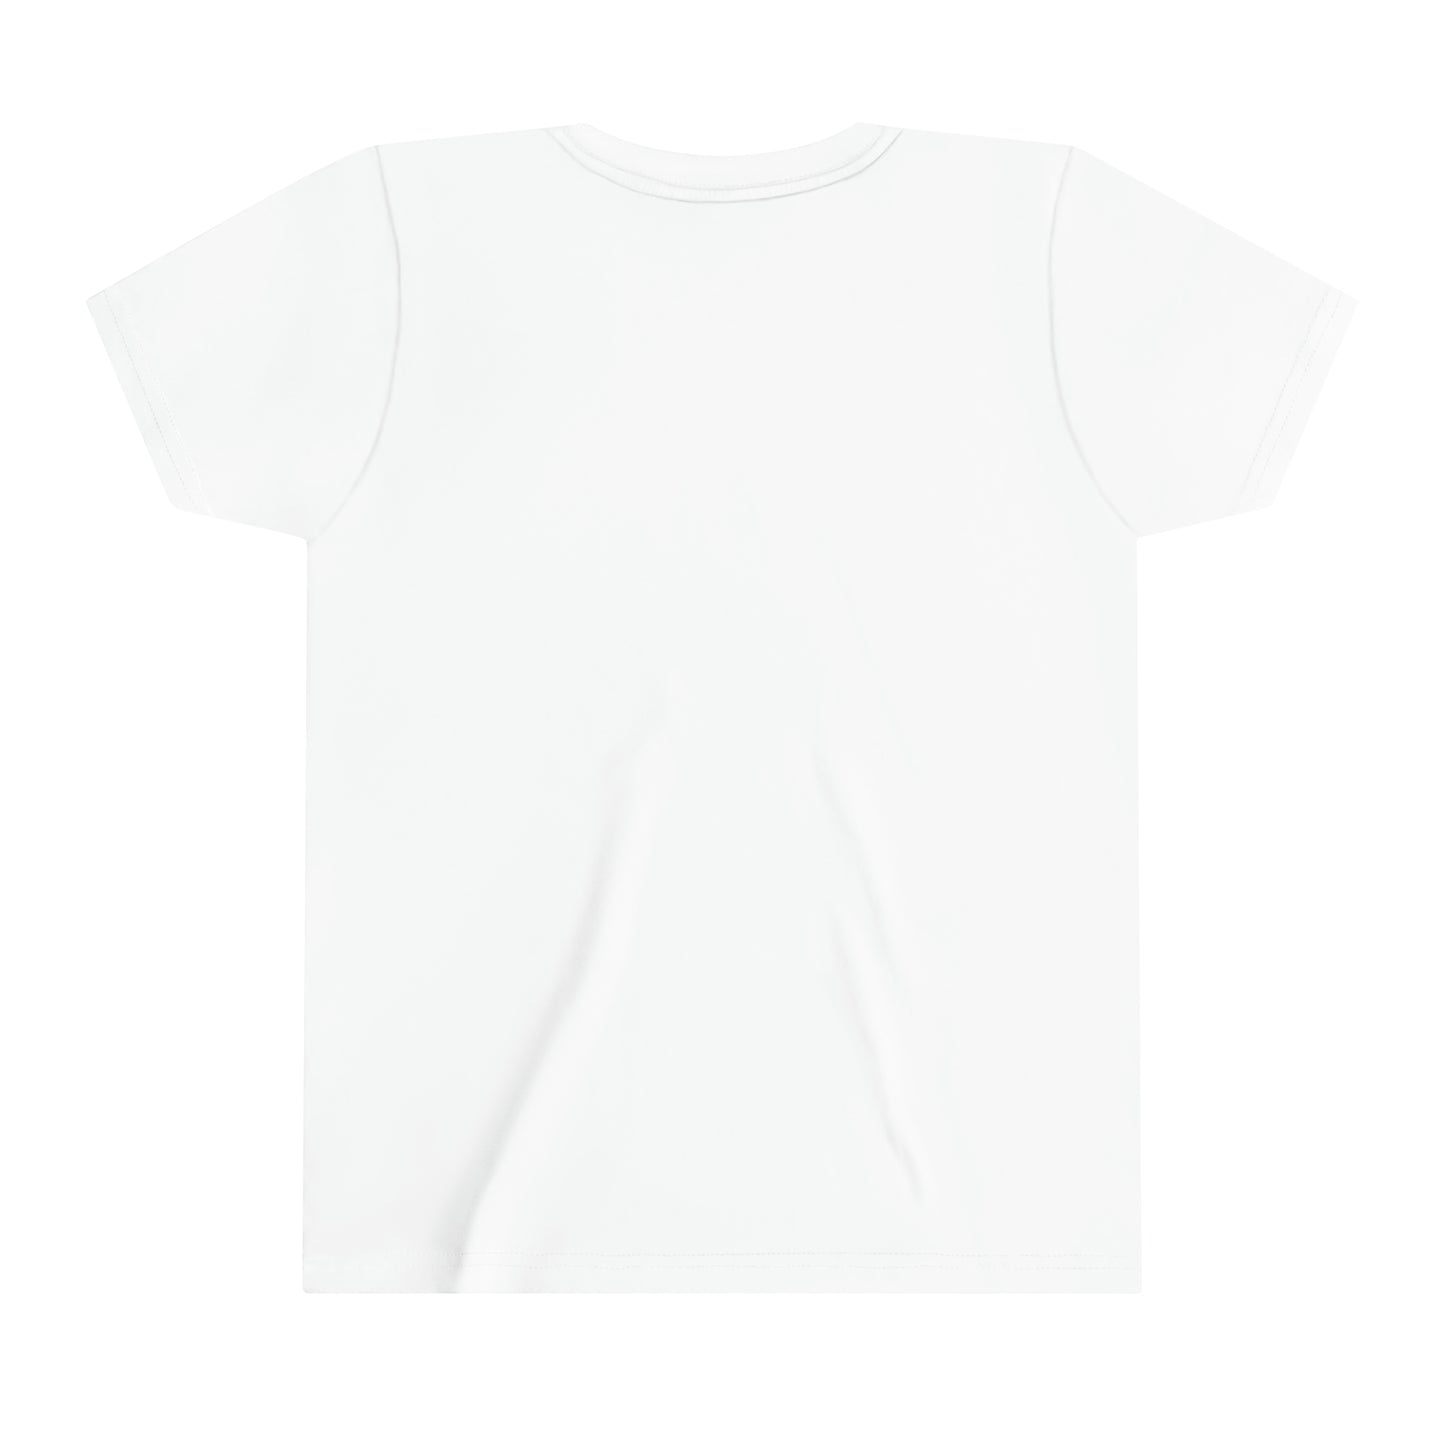 T-shirt regular wit - kids - Het wapen van Rotterdam - logo voor groot